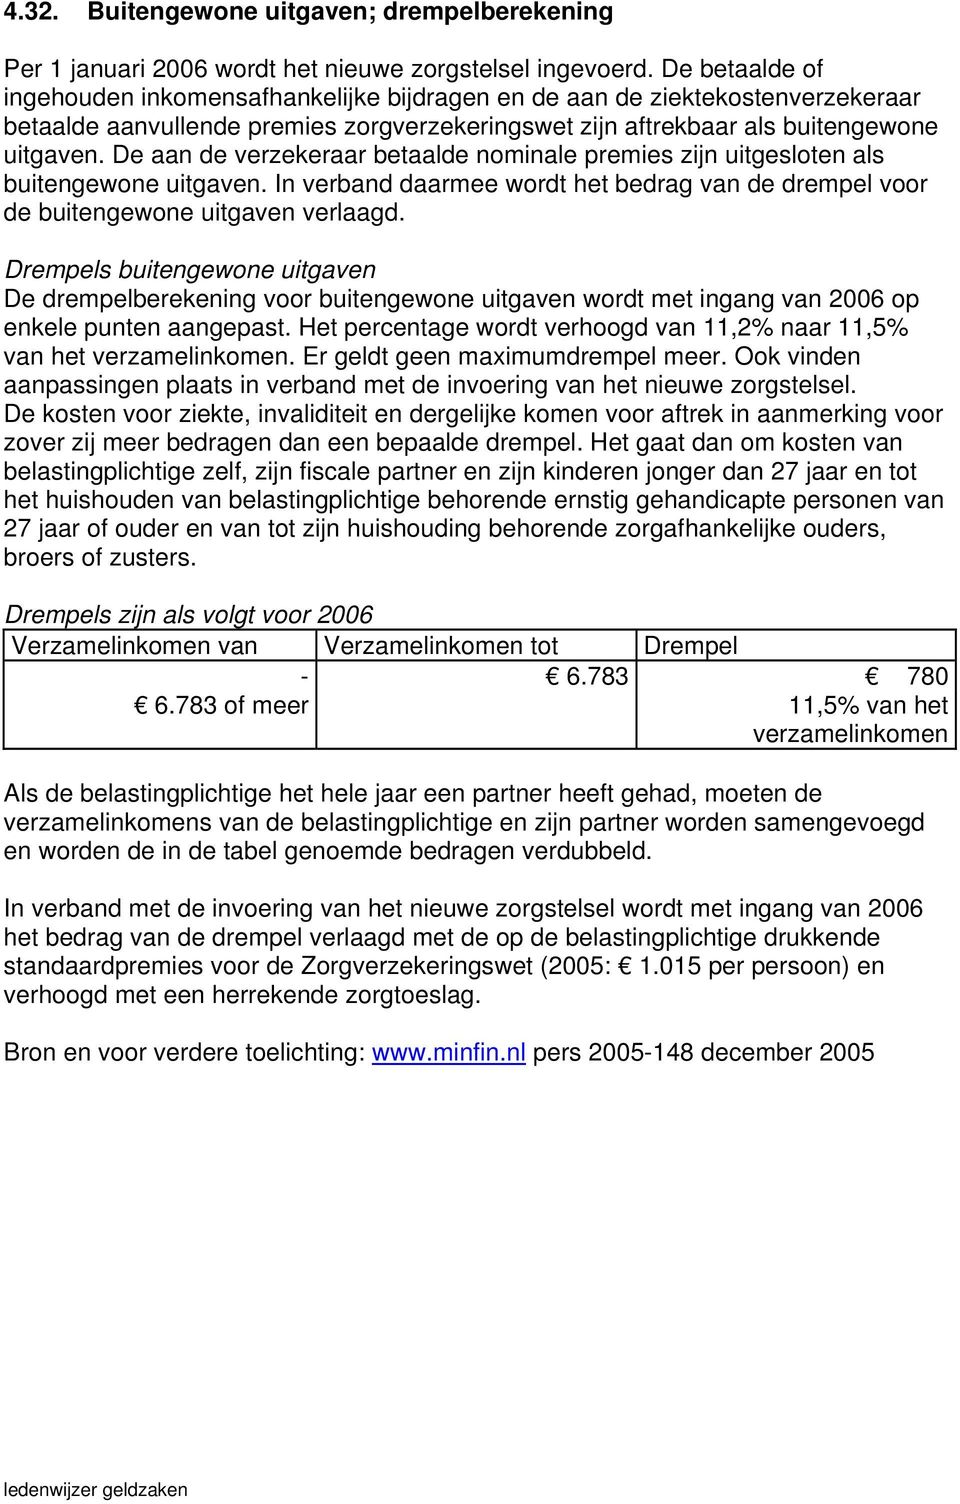 De aan de verzekeraar betaalde nominale premies zijn uitgesloten als buitengewone uitgaven. In verband daarmee wordt het bedrag van de drempel voor de buitengewone uitgaven verlaagd.